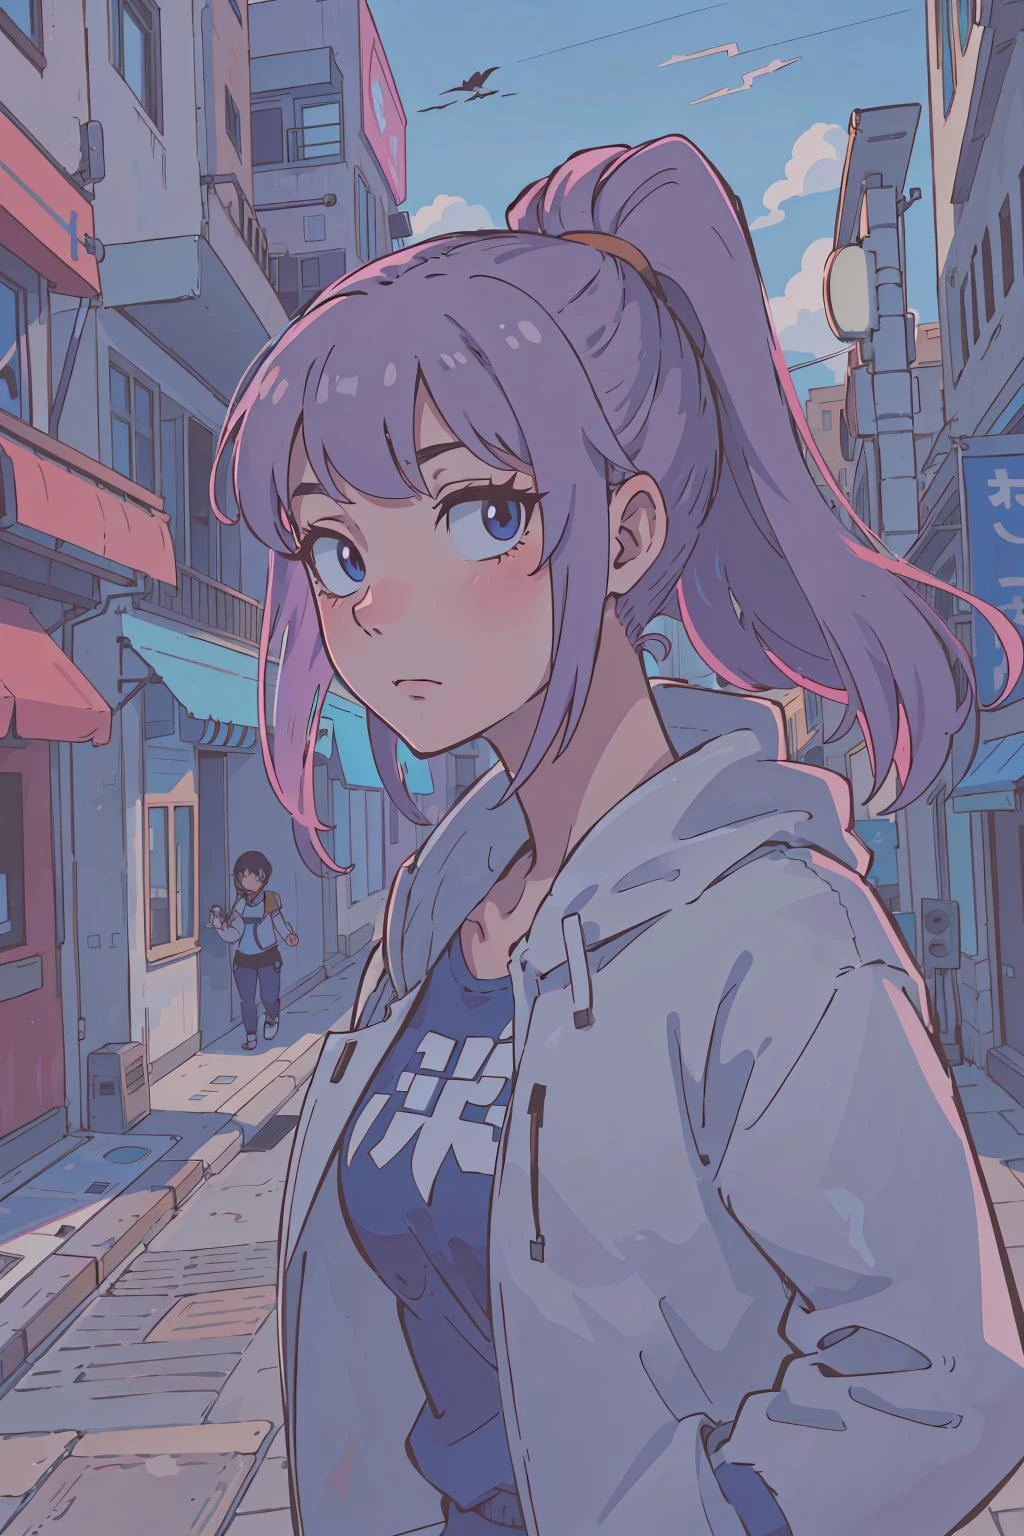 (beste Qualität:0.8),
(beste Qualität:0.8), perfekte Anime-Illustration, Extreme Nahaufnahme Porträt einer hübschen Frau zu Fuß durch die Stadt